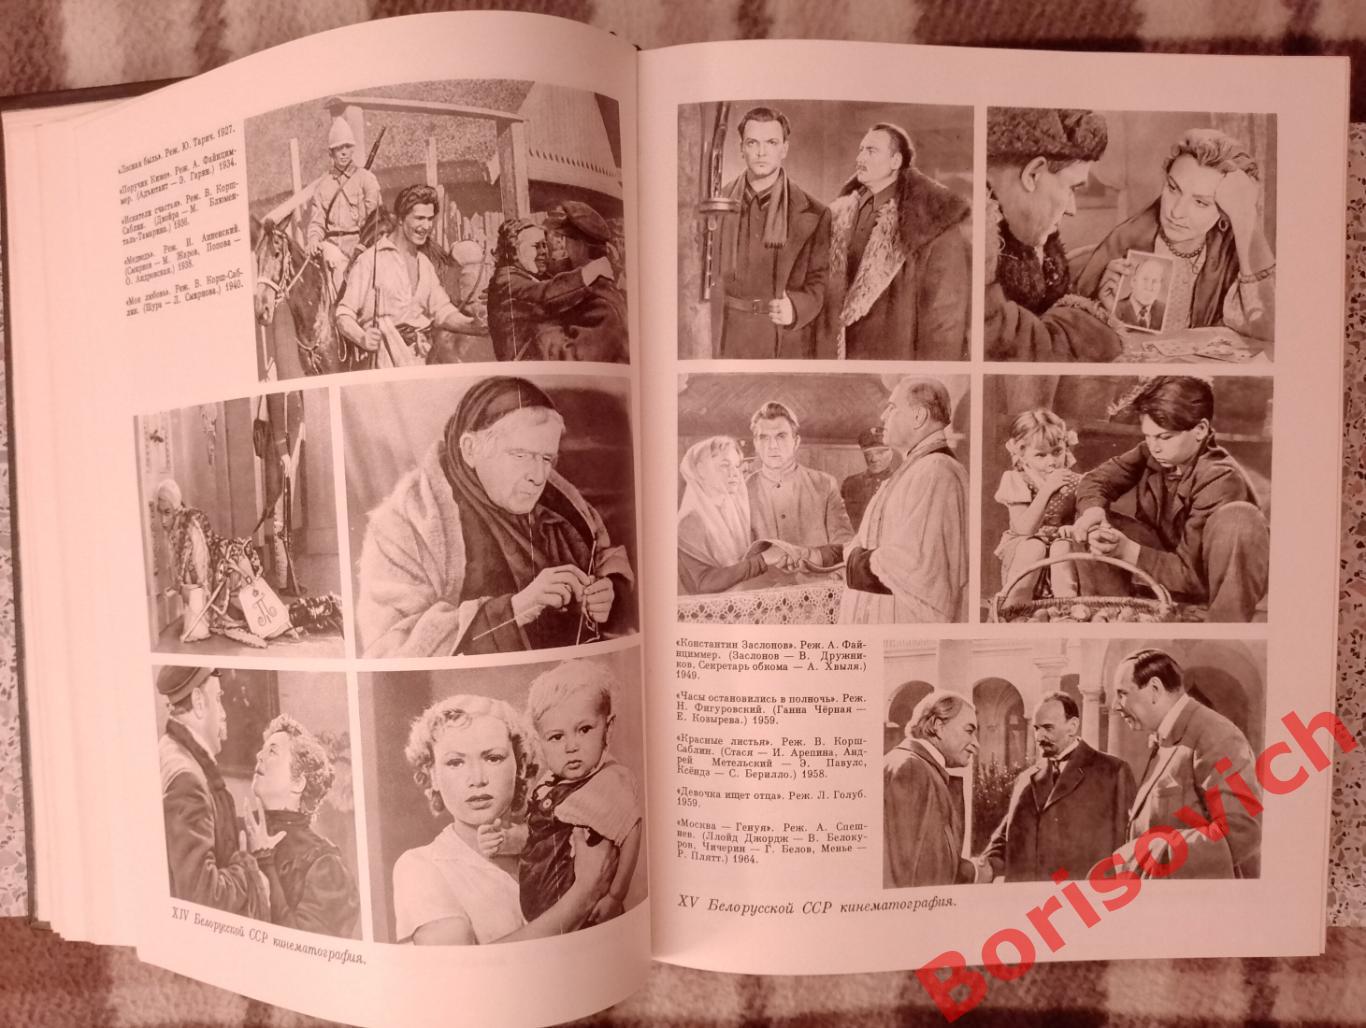 КИНО ЭНЦИКЛОПЕДИЧЕСКИЙ СЛОВАРЬ 1986 г 640 стр + 96 листов иллюстраций 6